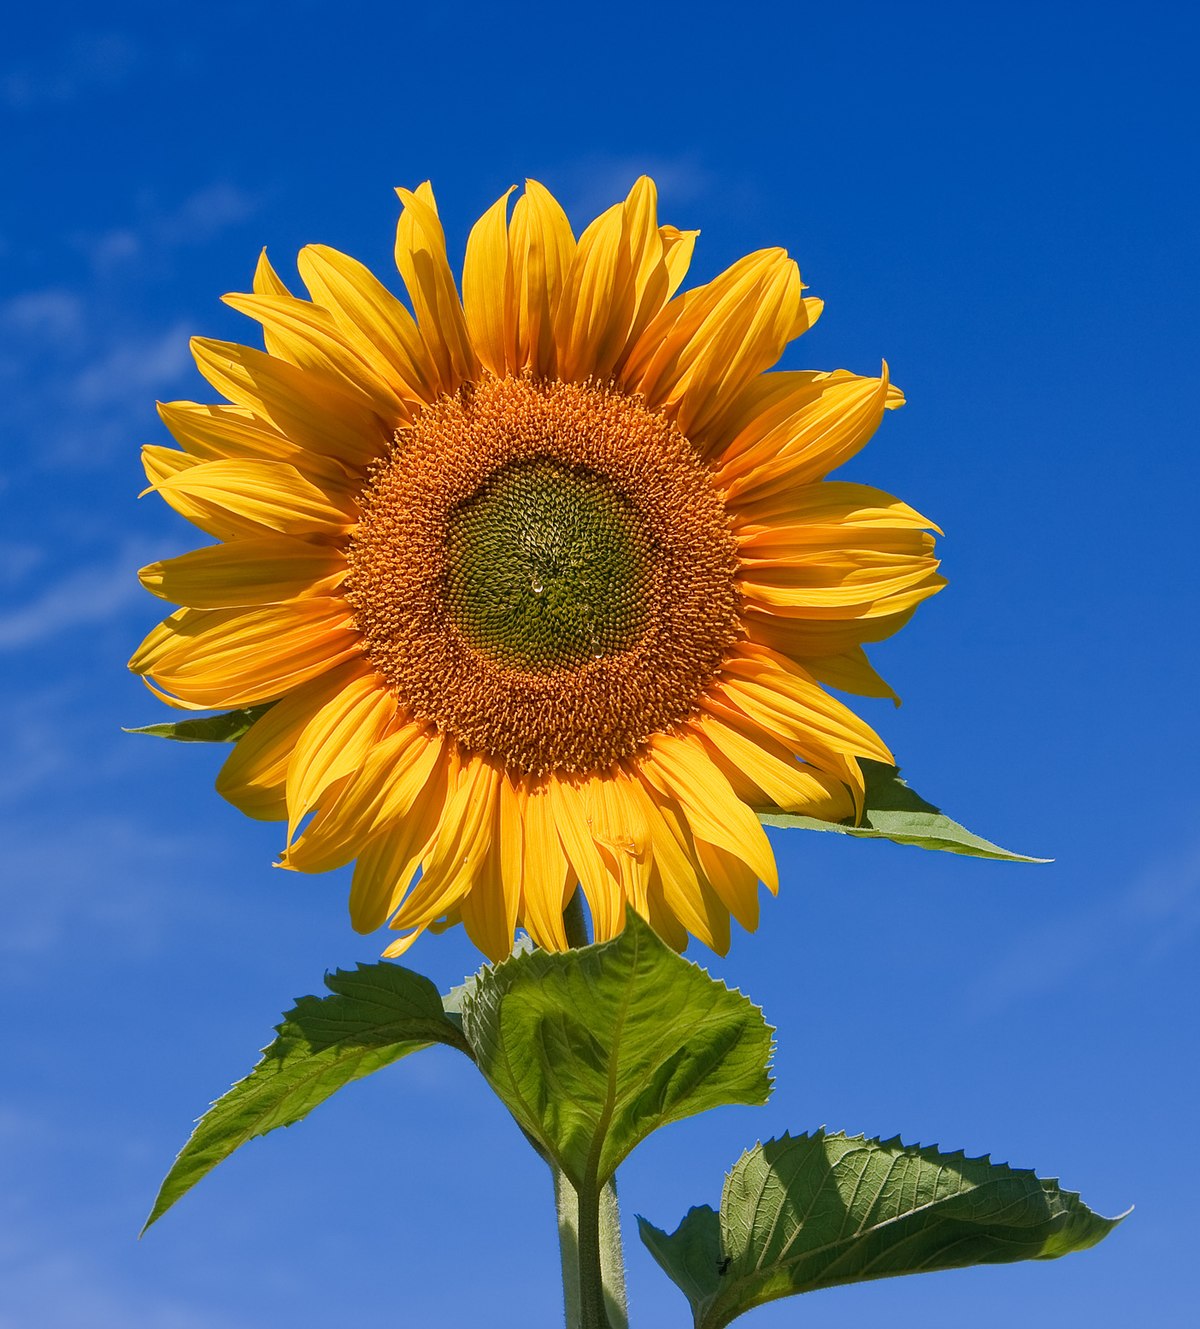 Gambar Sunflower - KibrisPDR